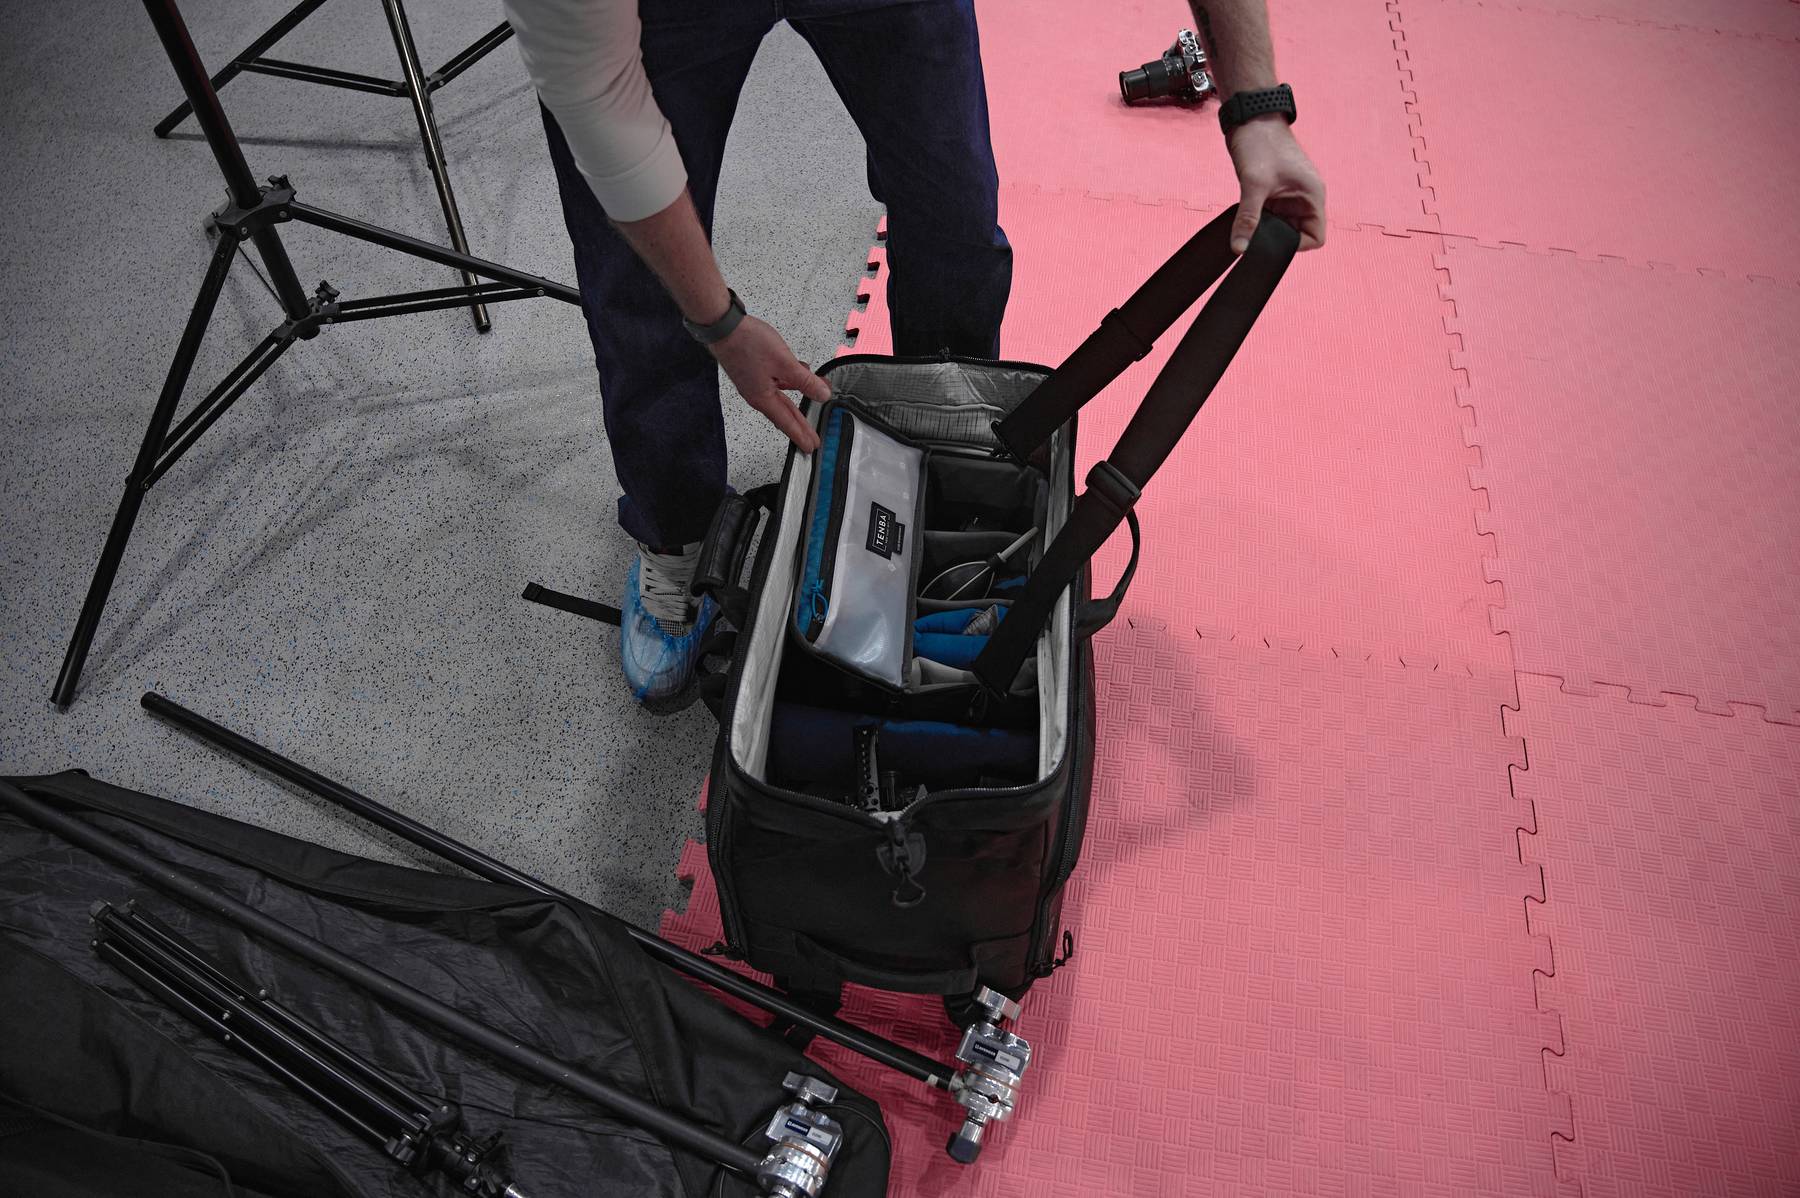 Обзор Tenba Cineluxe Backpack 24 - большой рюкзак для операторов и фотографов